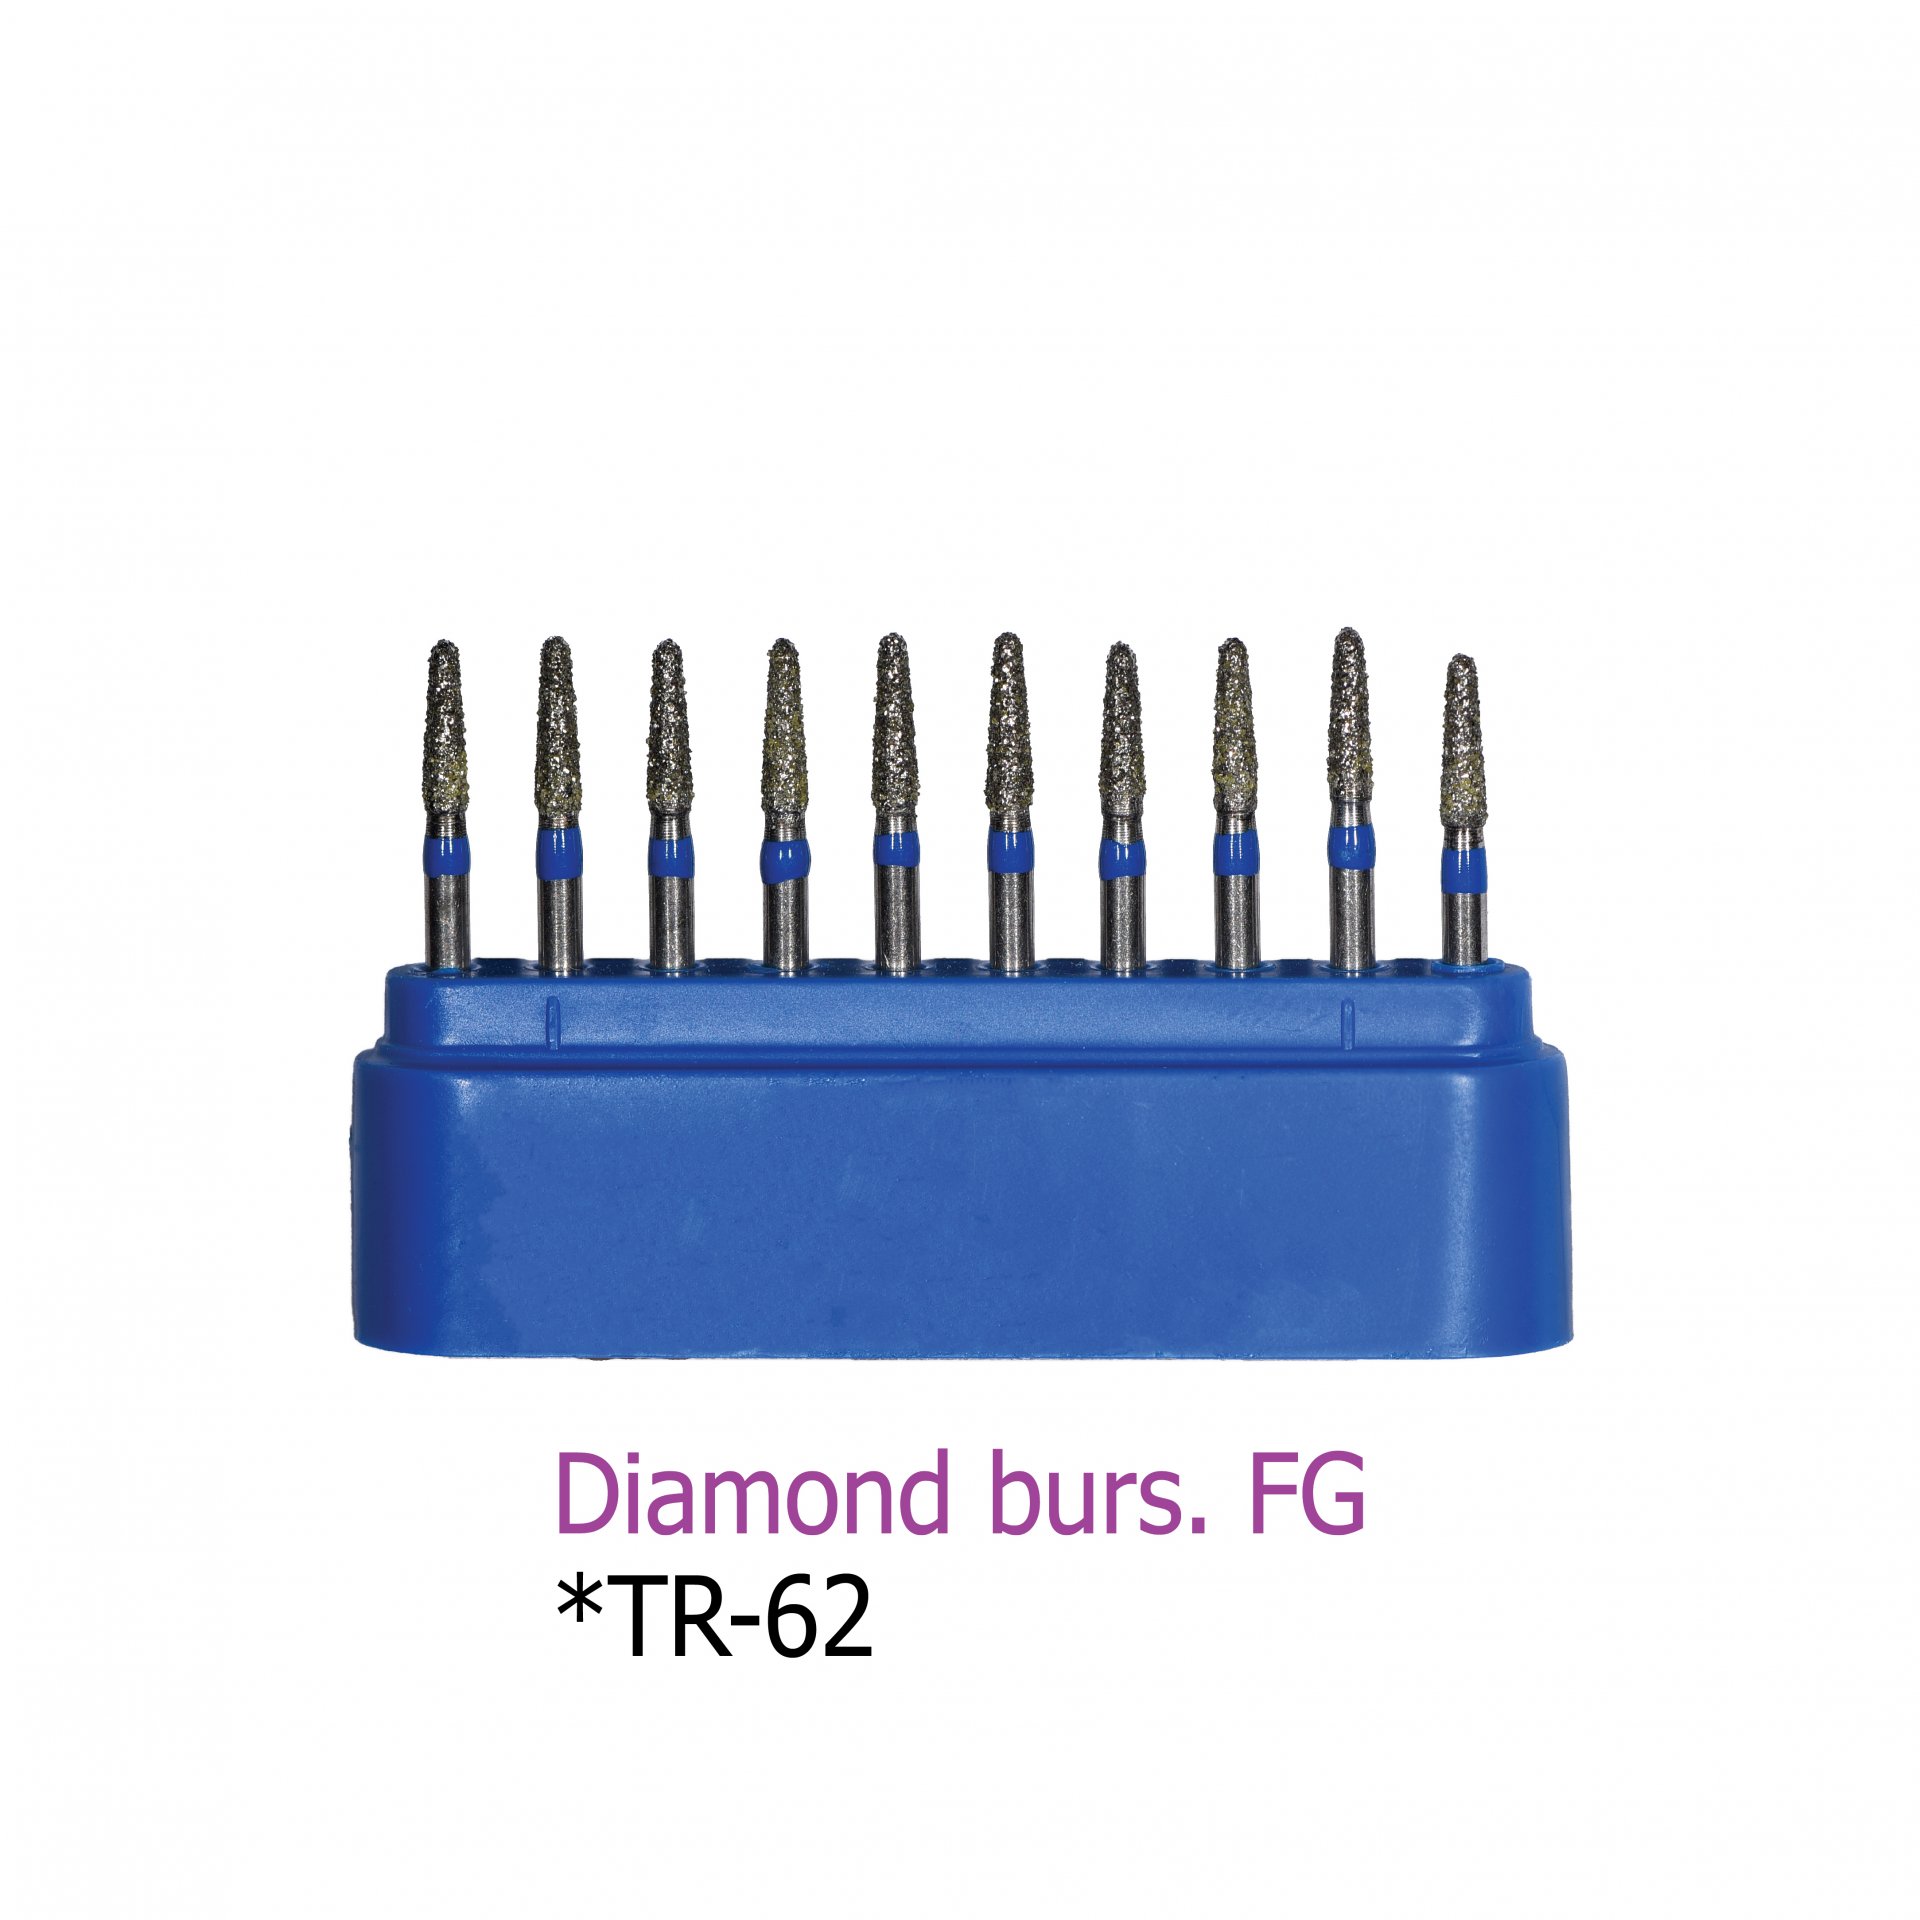 Diamond burs. FG *TR-62